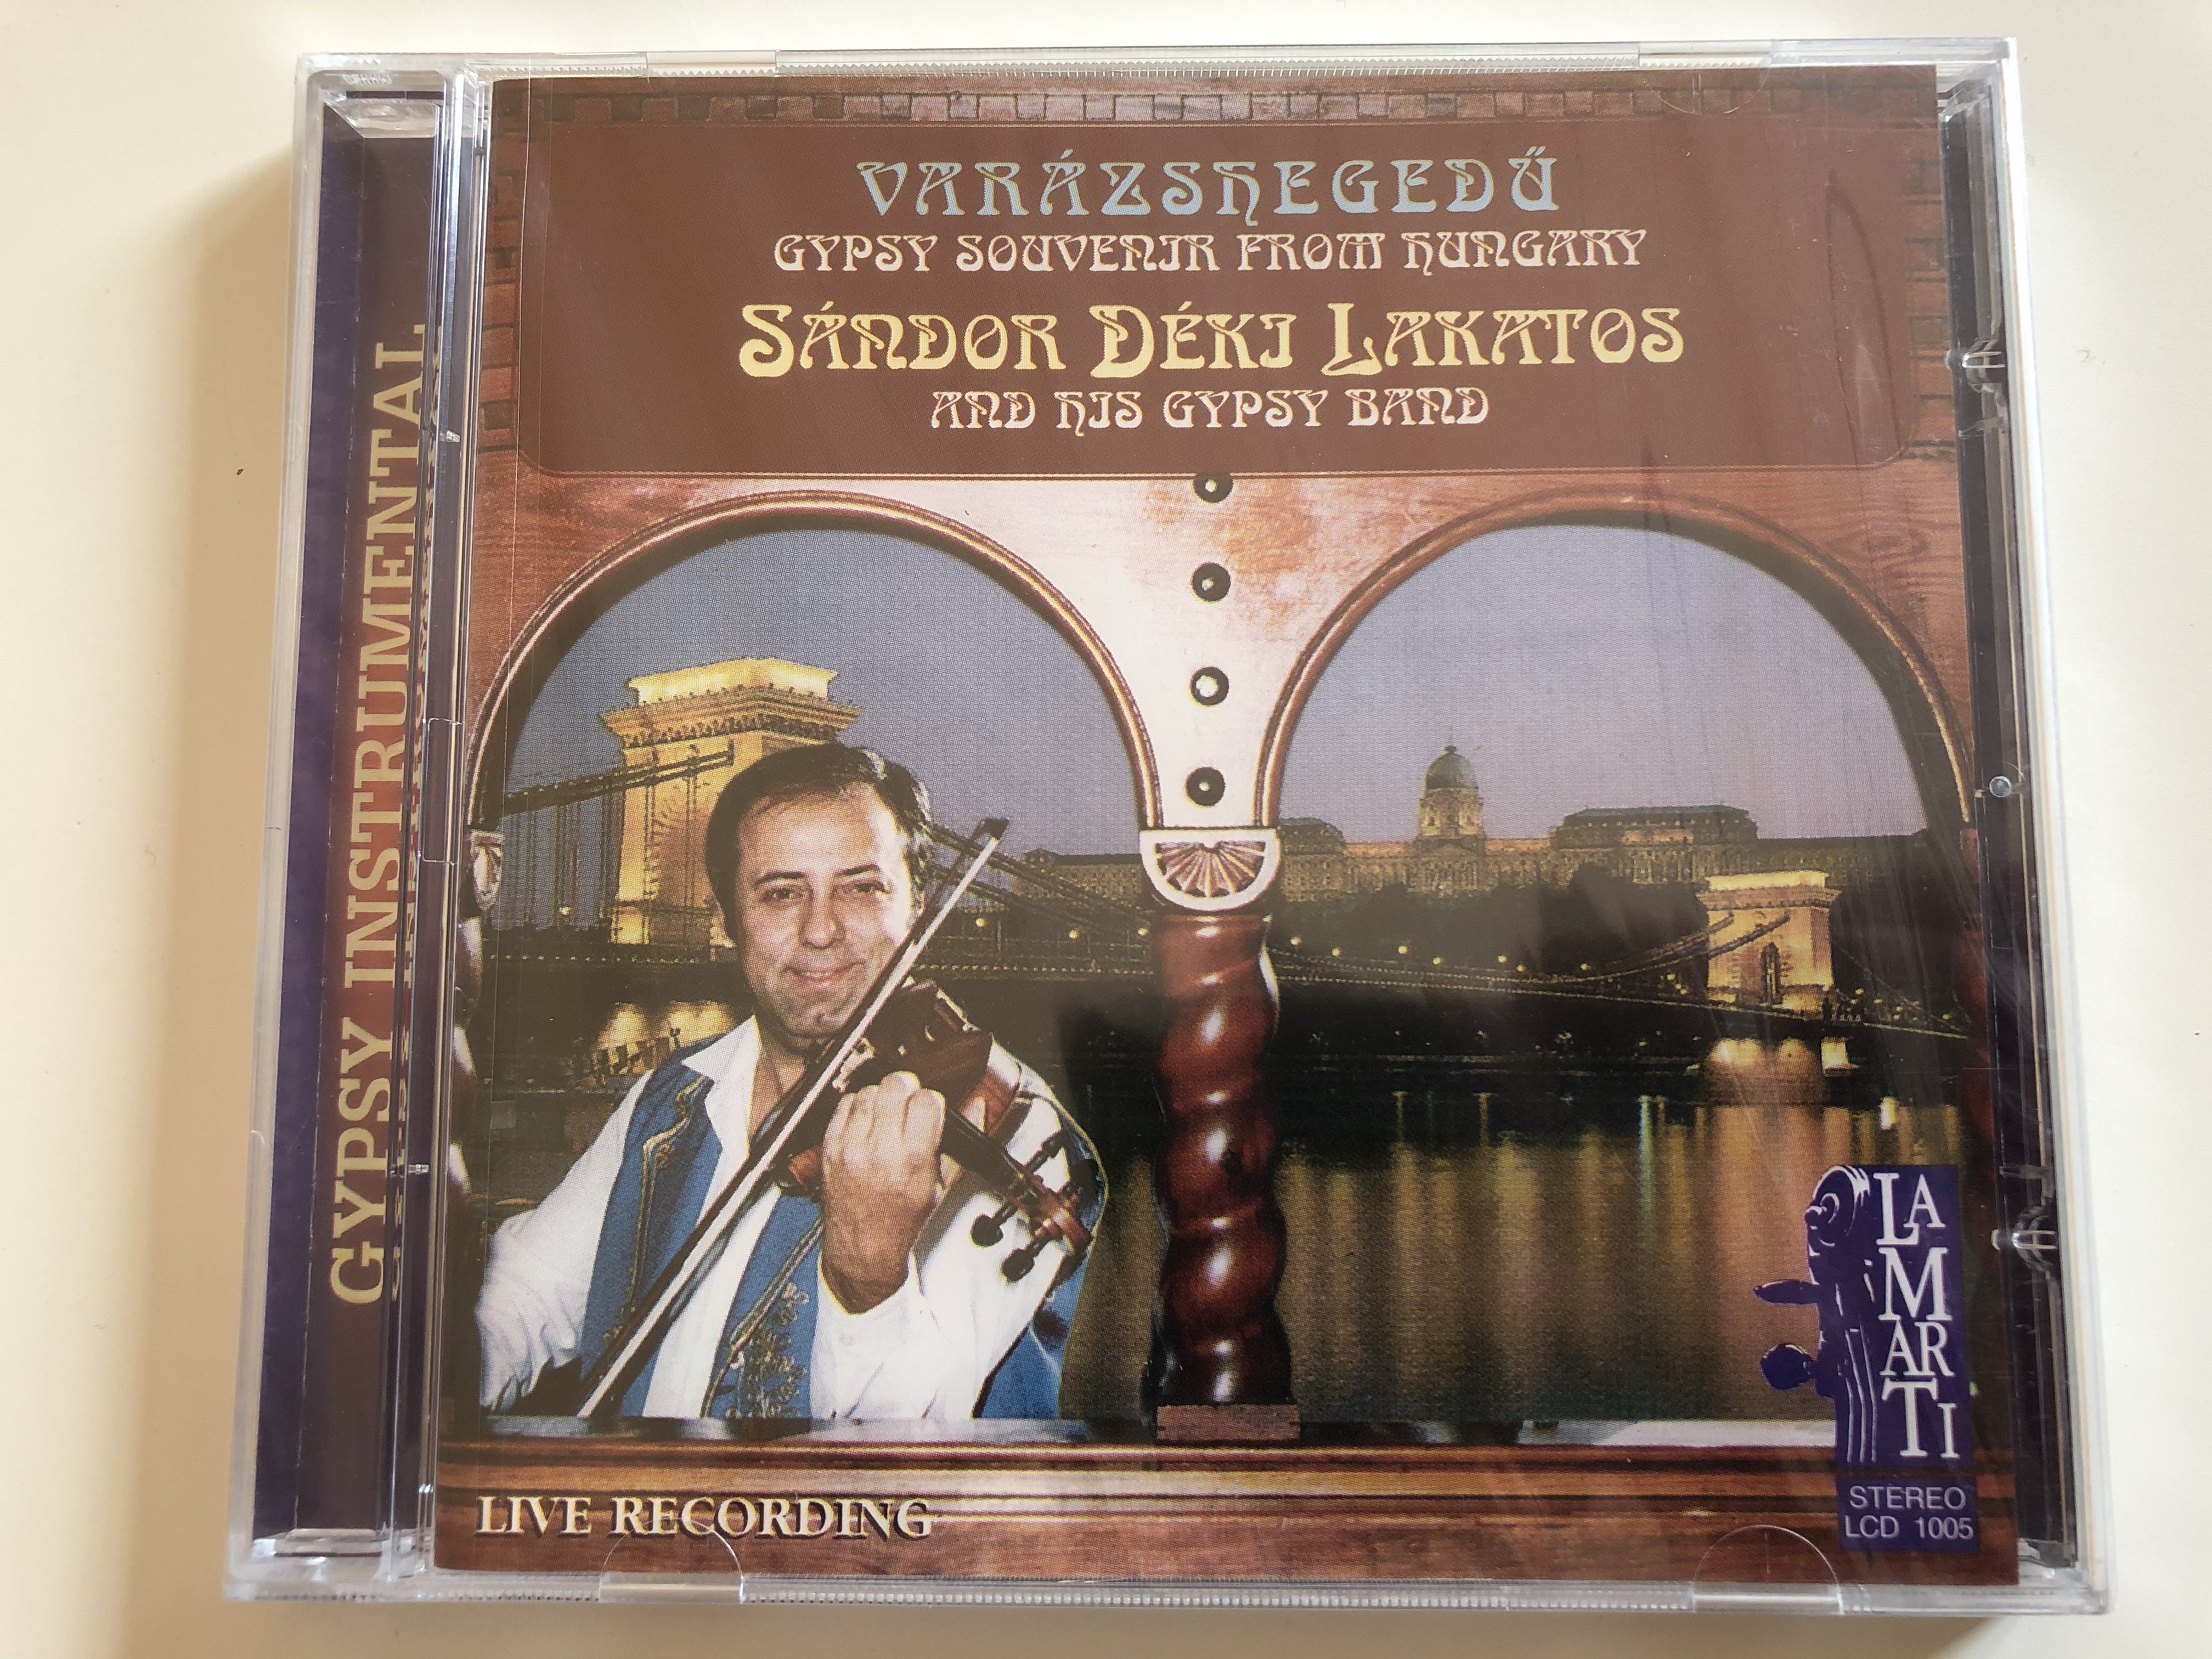 varazshegedu-gypsy-souvenir-from-hungary-s-ndor-d-ki-lakatos-and-his-gipsy-band-live-recording-lamarti-audio-cd-1995-stereo-lcd-1005-1-.jpg